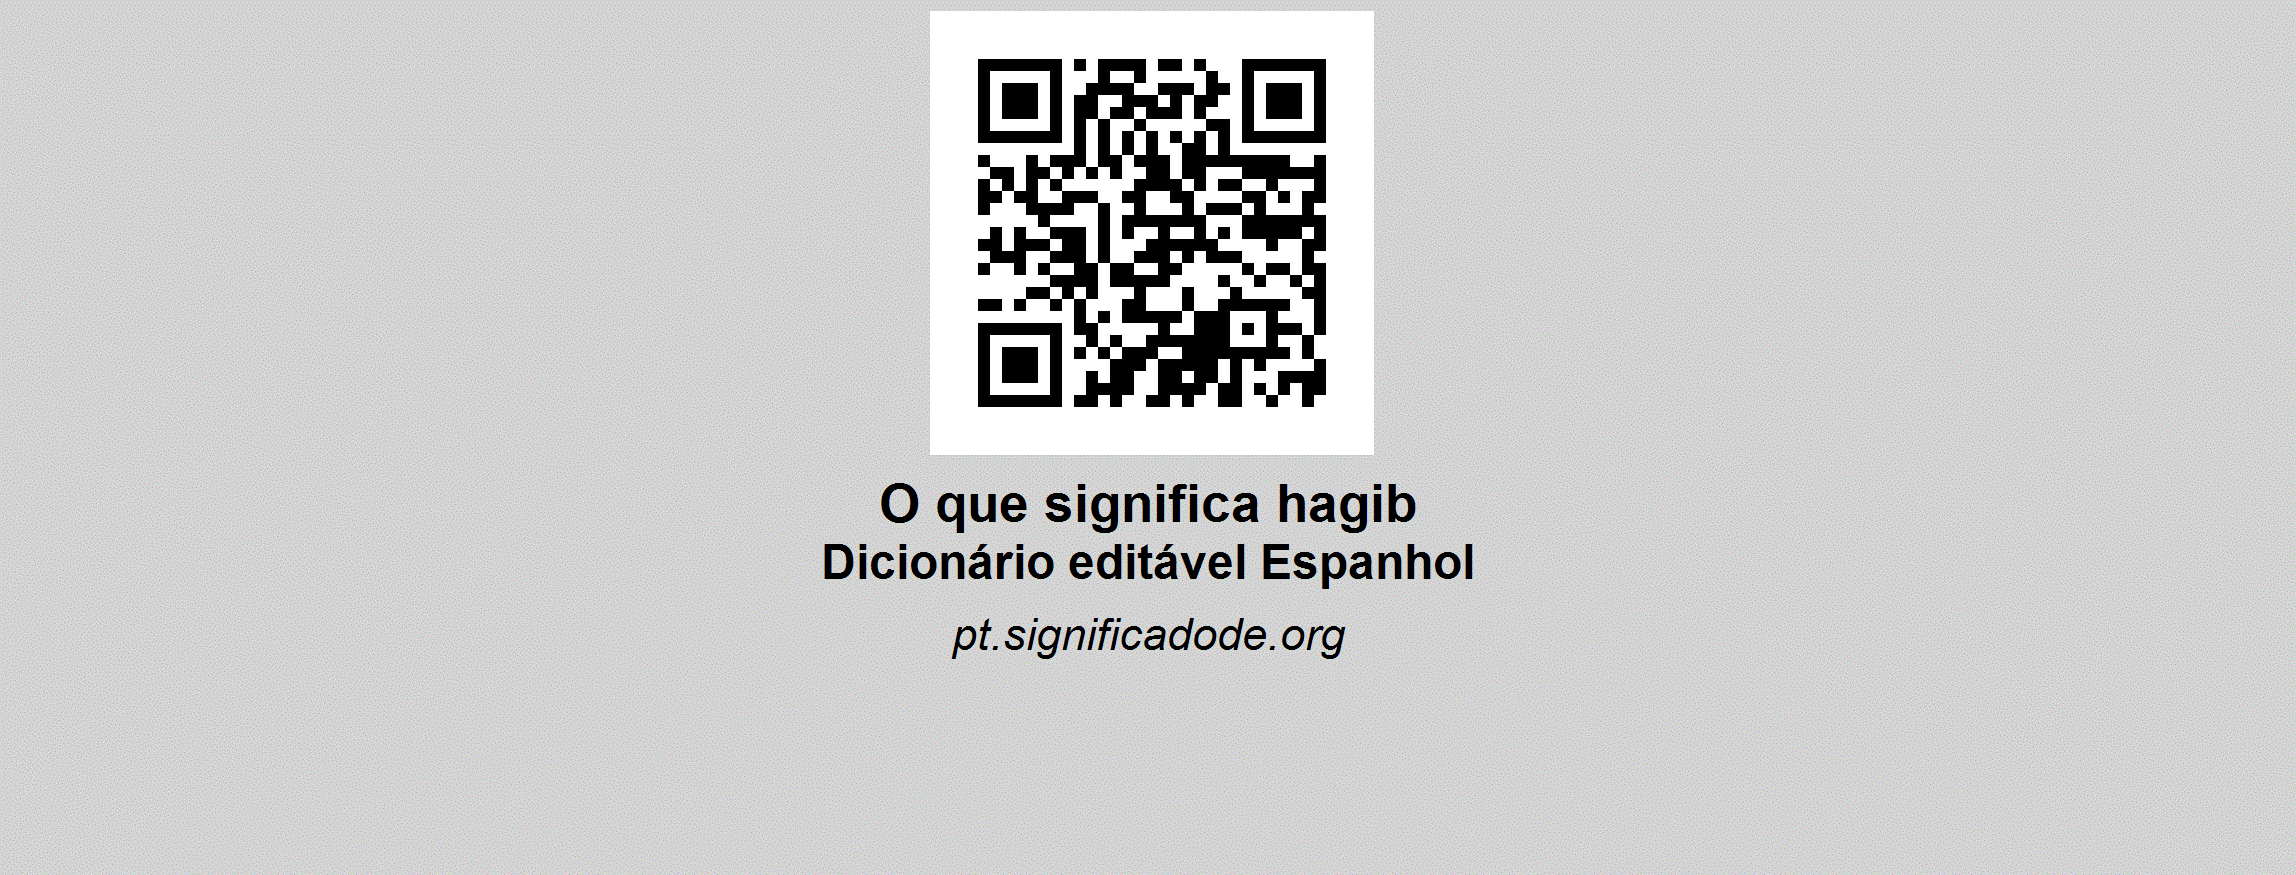 HAGIB - Espanhol, dicionário colaborativo